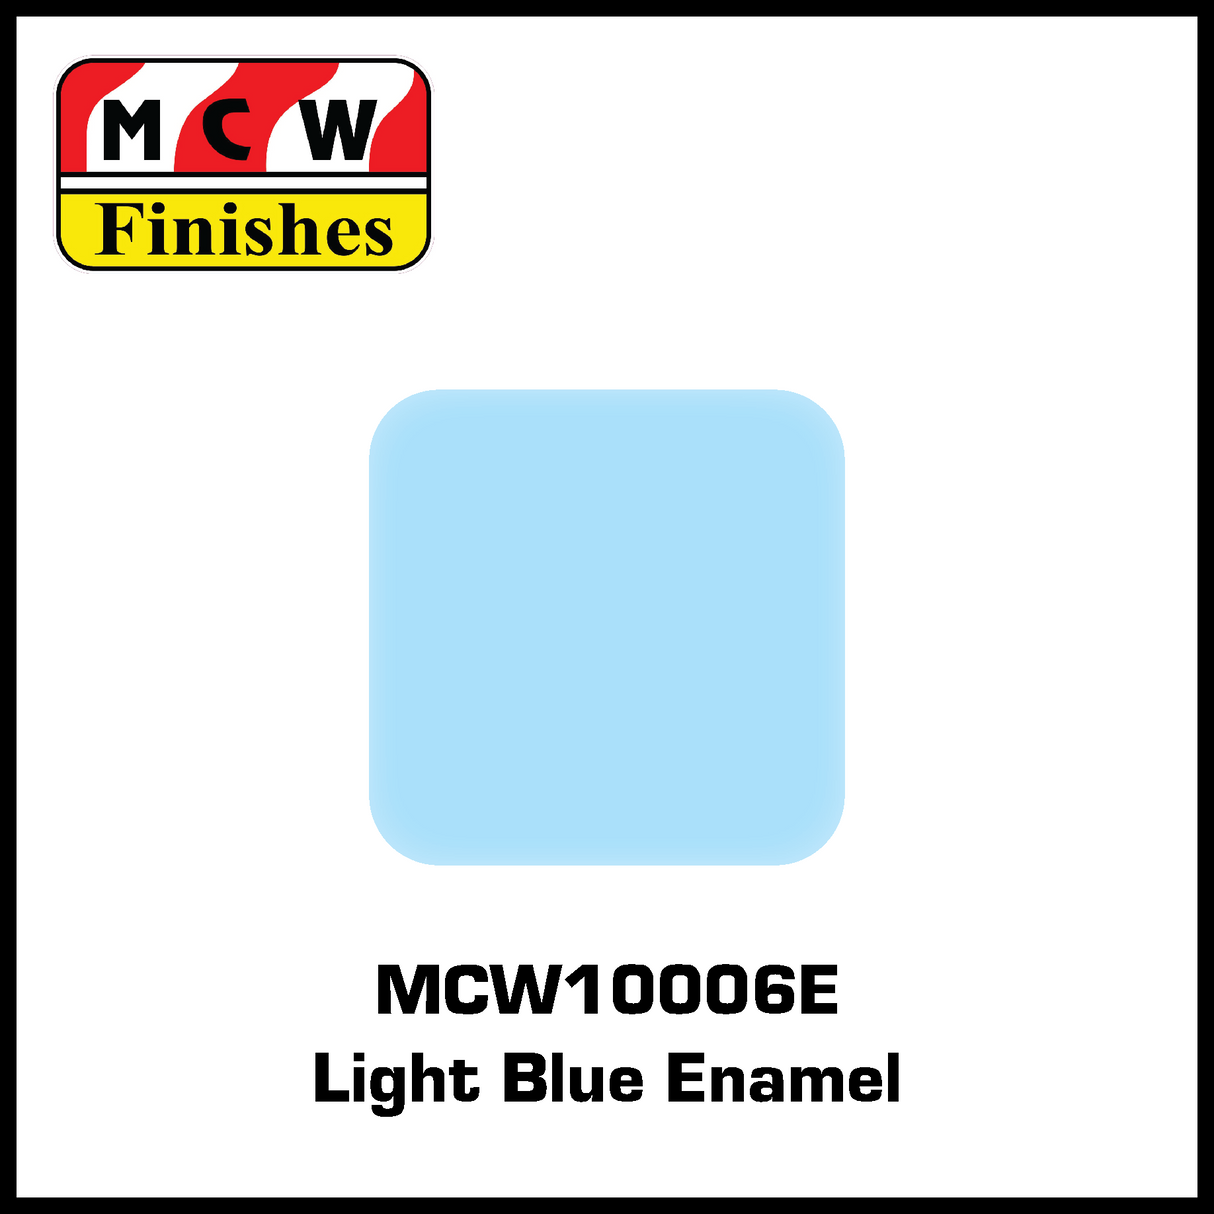 MCW Finishes Light Blue Enamel